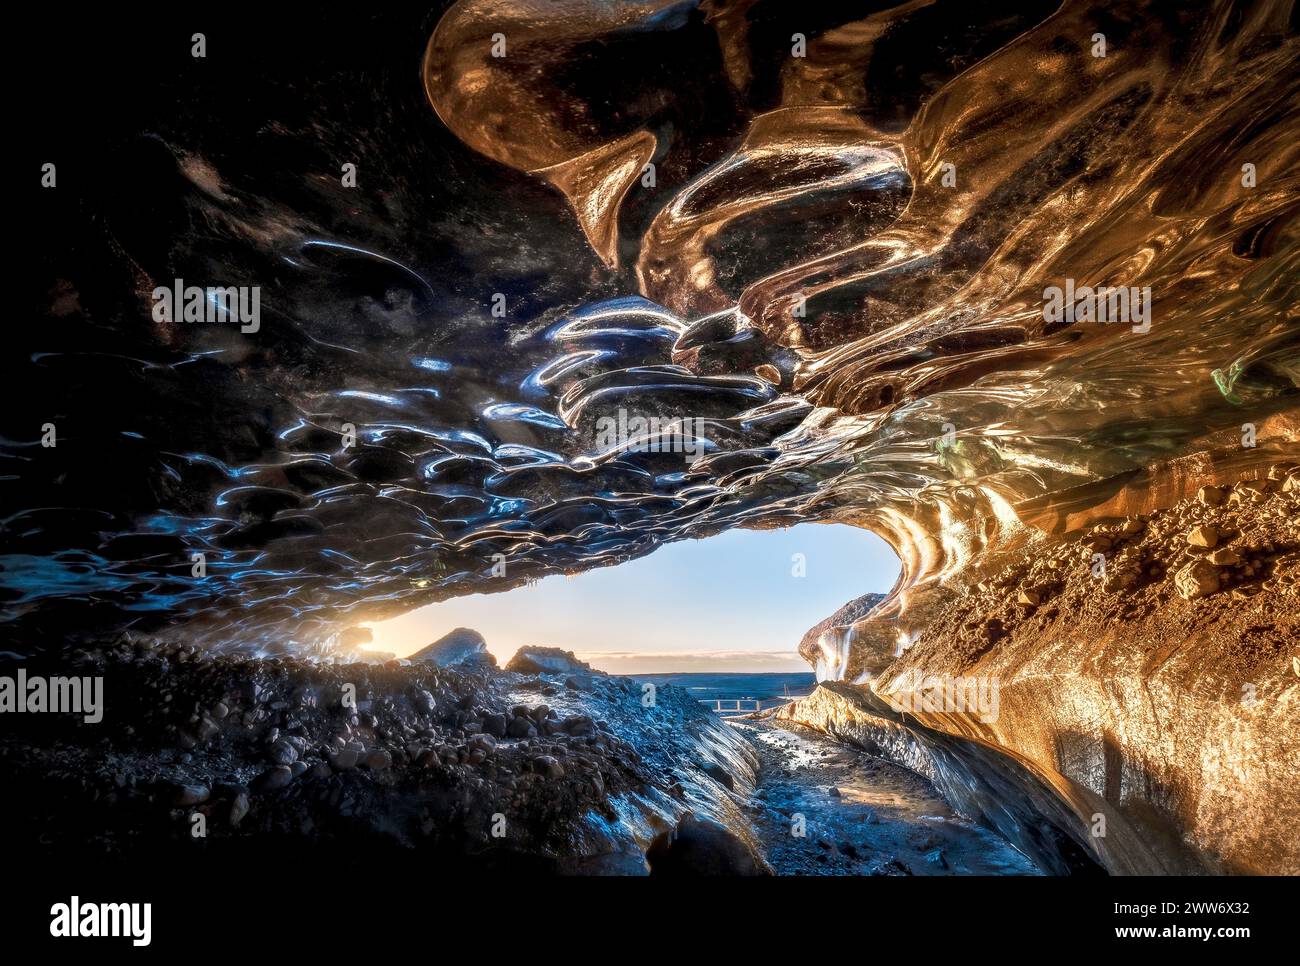 Im Inneren der Eishöhle zeigen die durchscheinenden Wände die Blautöne, die zwischen dem blasssten Azurblau und dem tiefsten Saphir tanzen und von warmem Sonnenlicht durchströmt werden Stockfoto